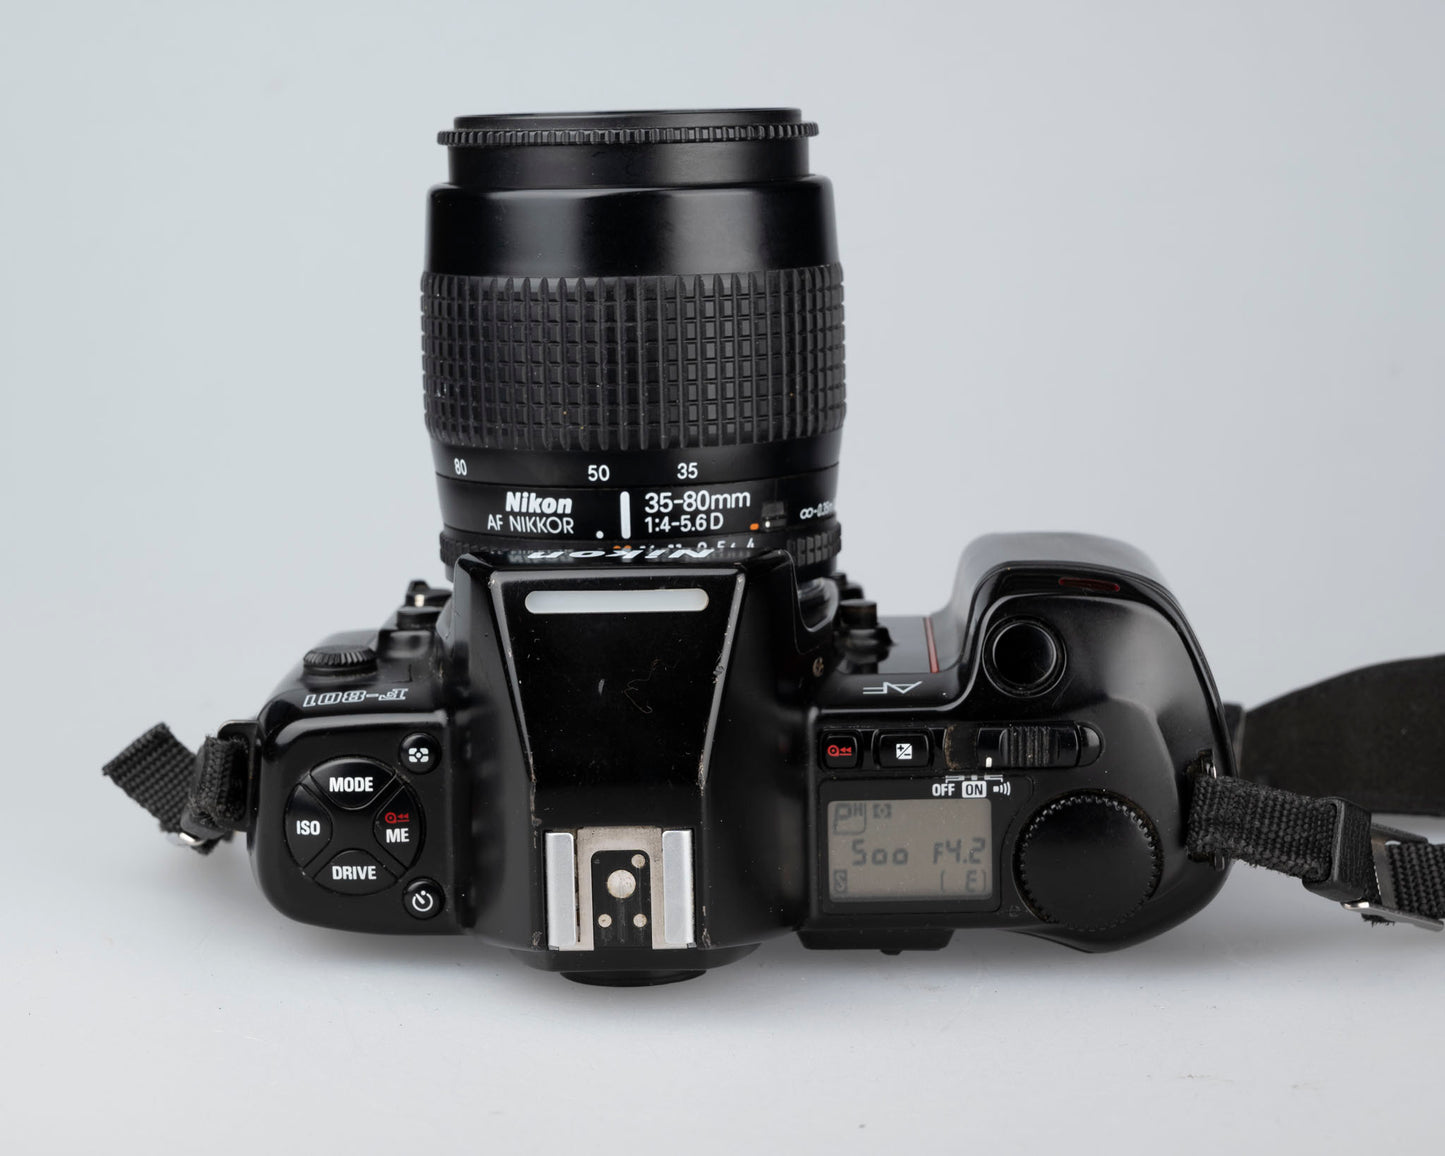 Nikon F-801 35mm SLR + Nikon Speedlight SB-24 + AF Nikkor 35-80mm lens + manual